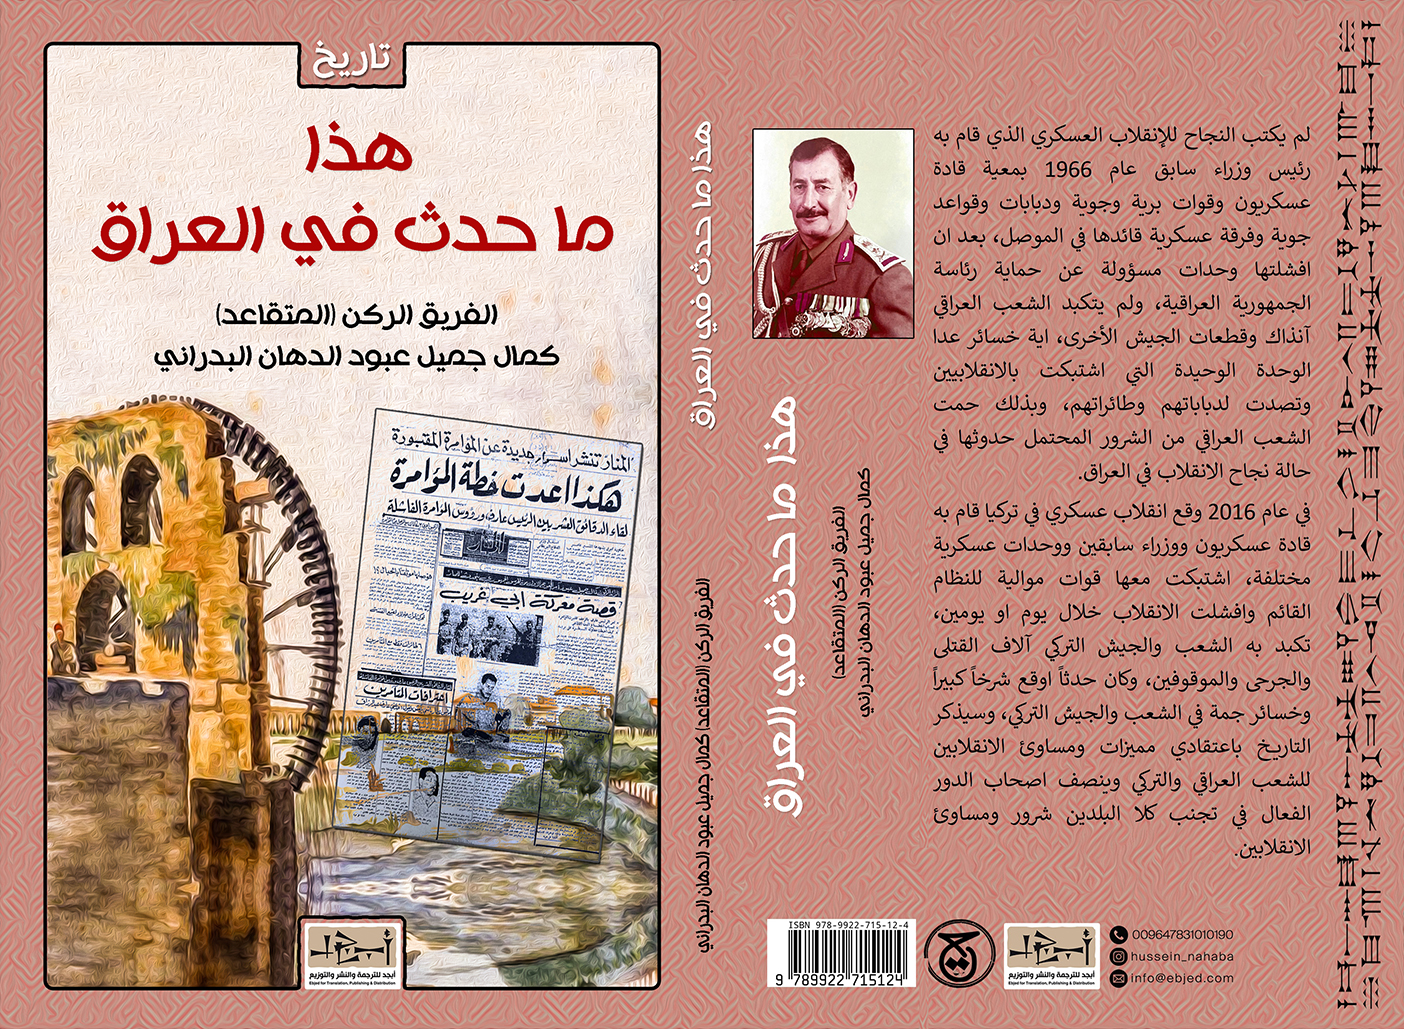 عنوان الكتاب: هذا ما حدث في العراق تأليف: الفريق الركن (المتقاعد) كمال جميل عبود الدهان البدراني التصنيف: تاريخ